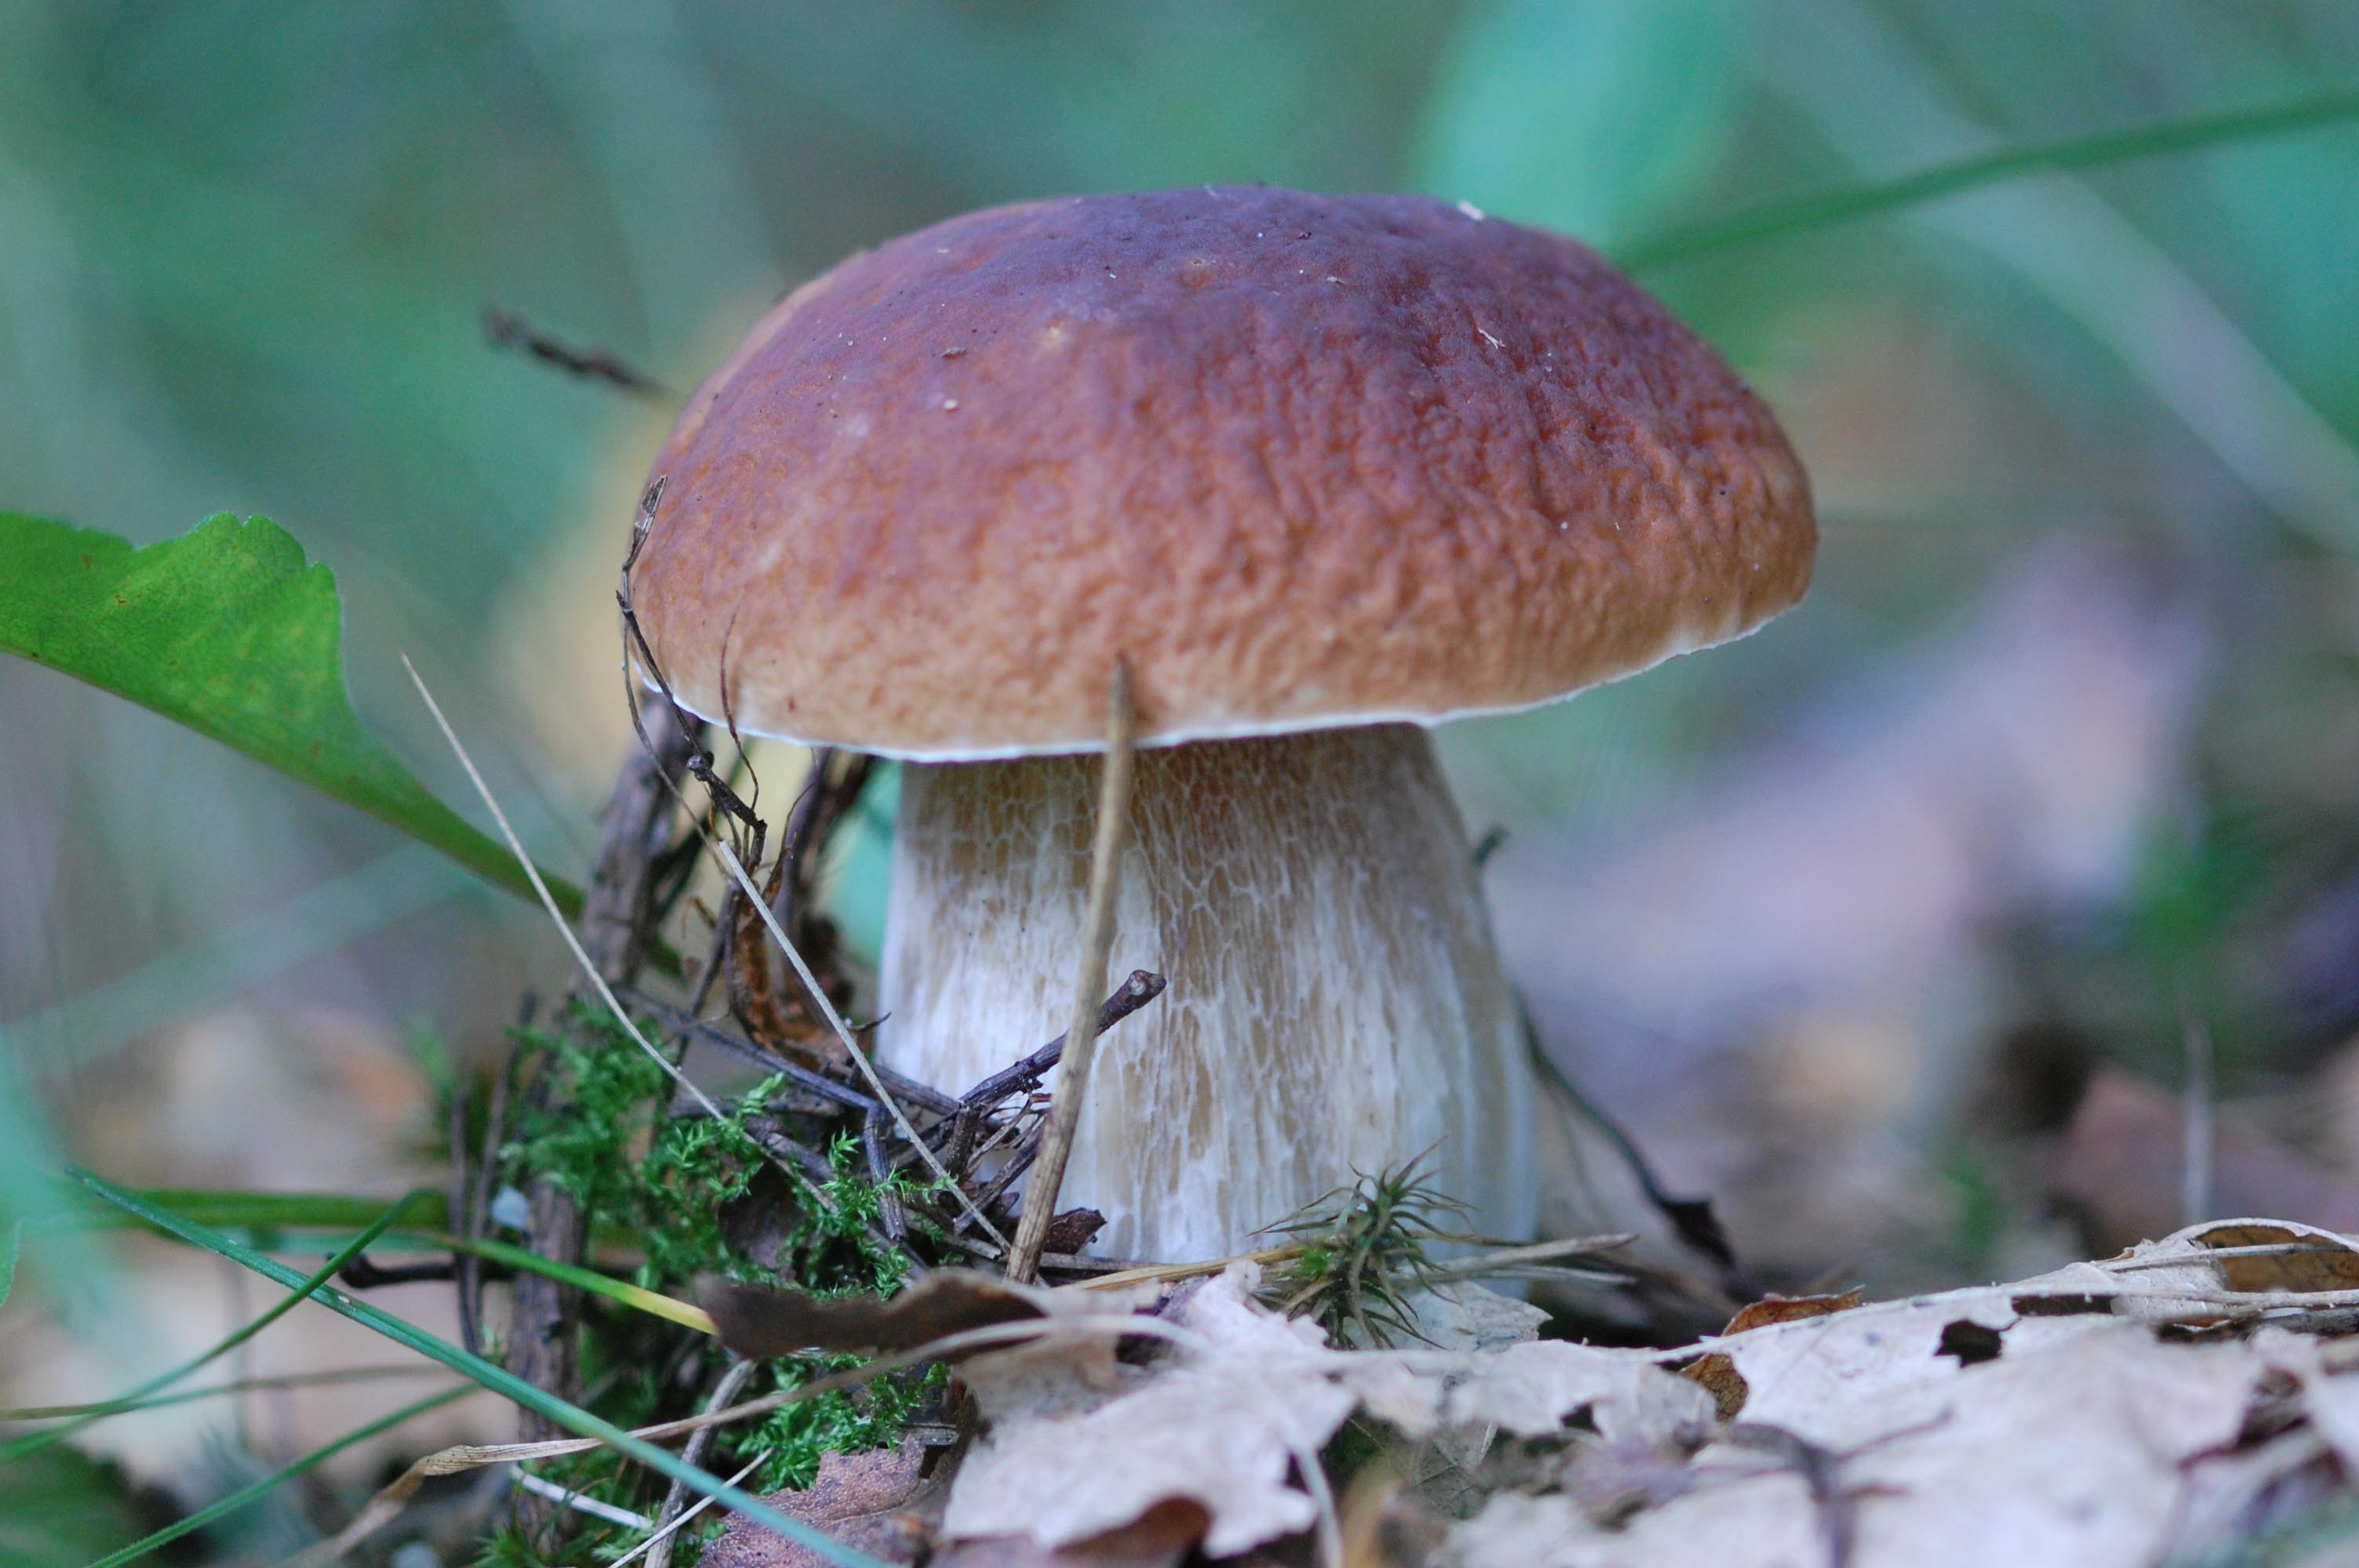 Белые гри. Ложный Боровик белый гриб. Boletus edulis – белый гриб. Боровик - белый гриб Боровик. Белый гриб Боровик фото.